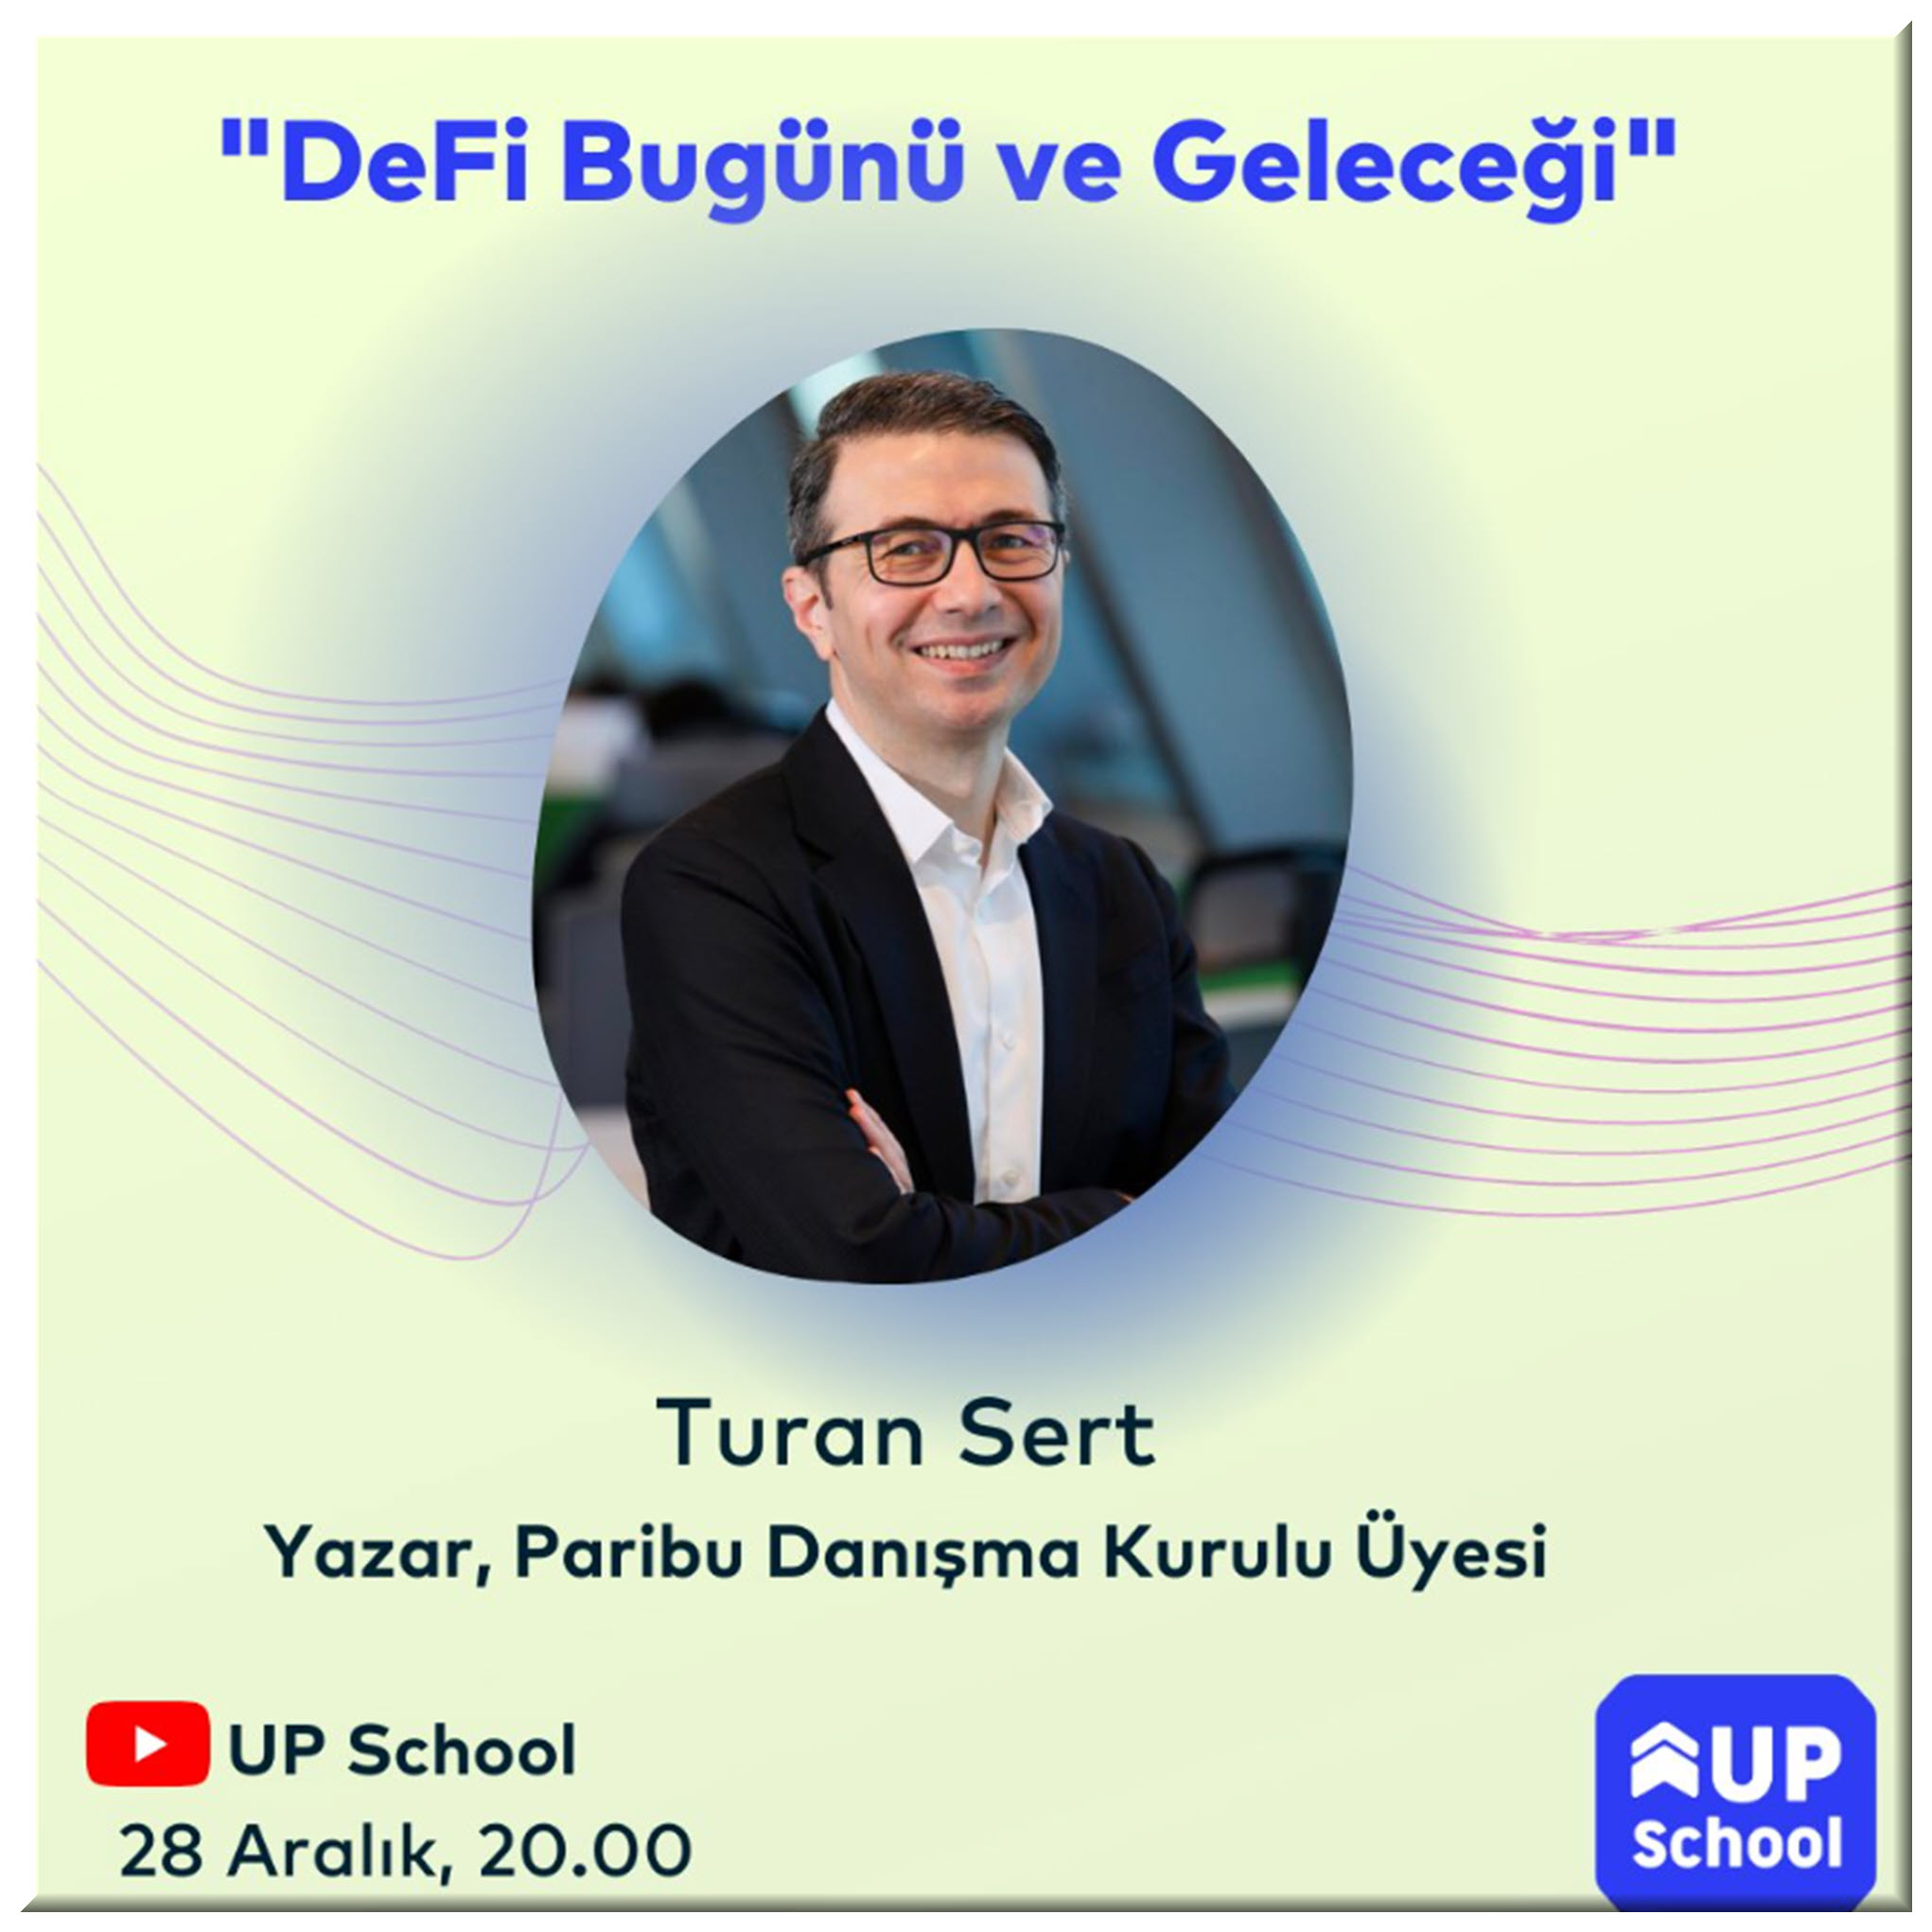 Turan Sert, UP School ile Canlı Yayında!!!